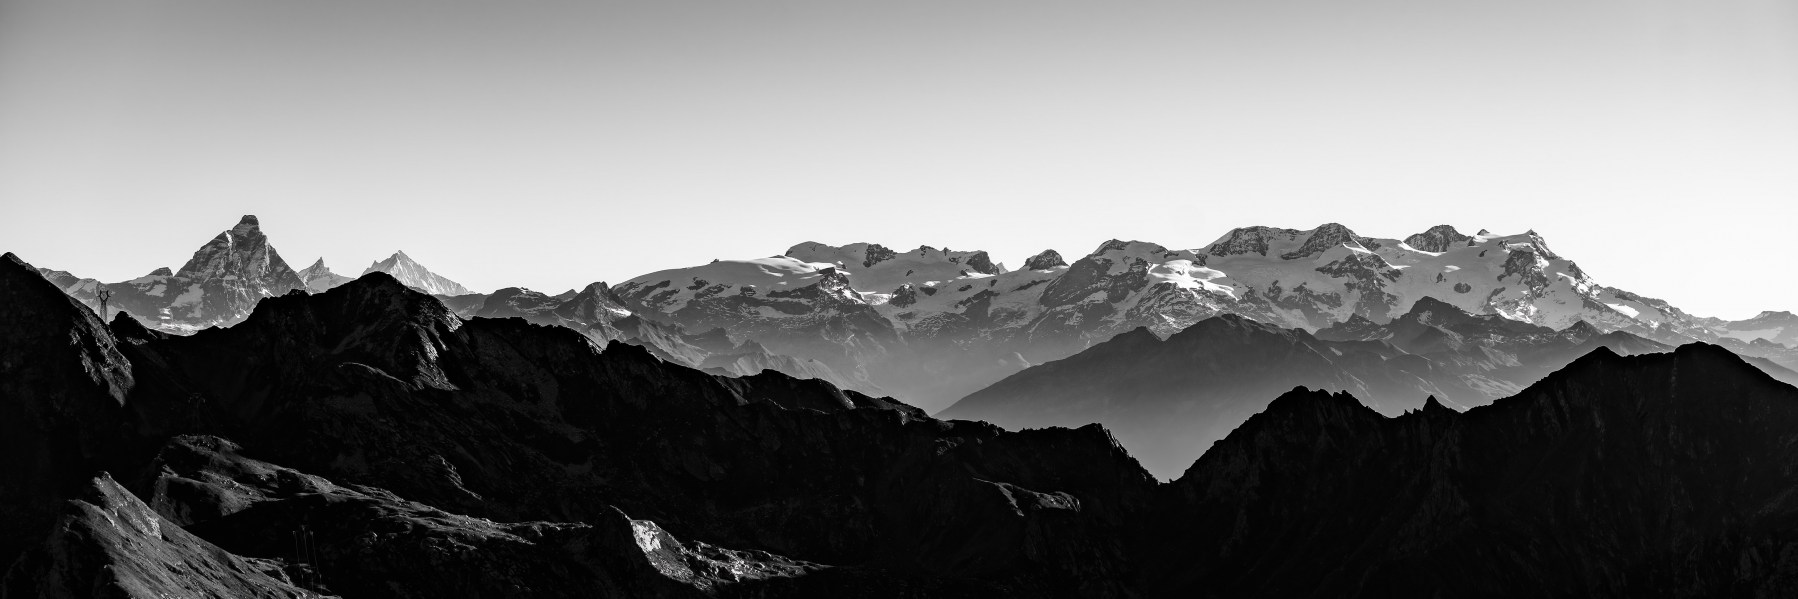 Panorama catena Monte Rosa - Cervino